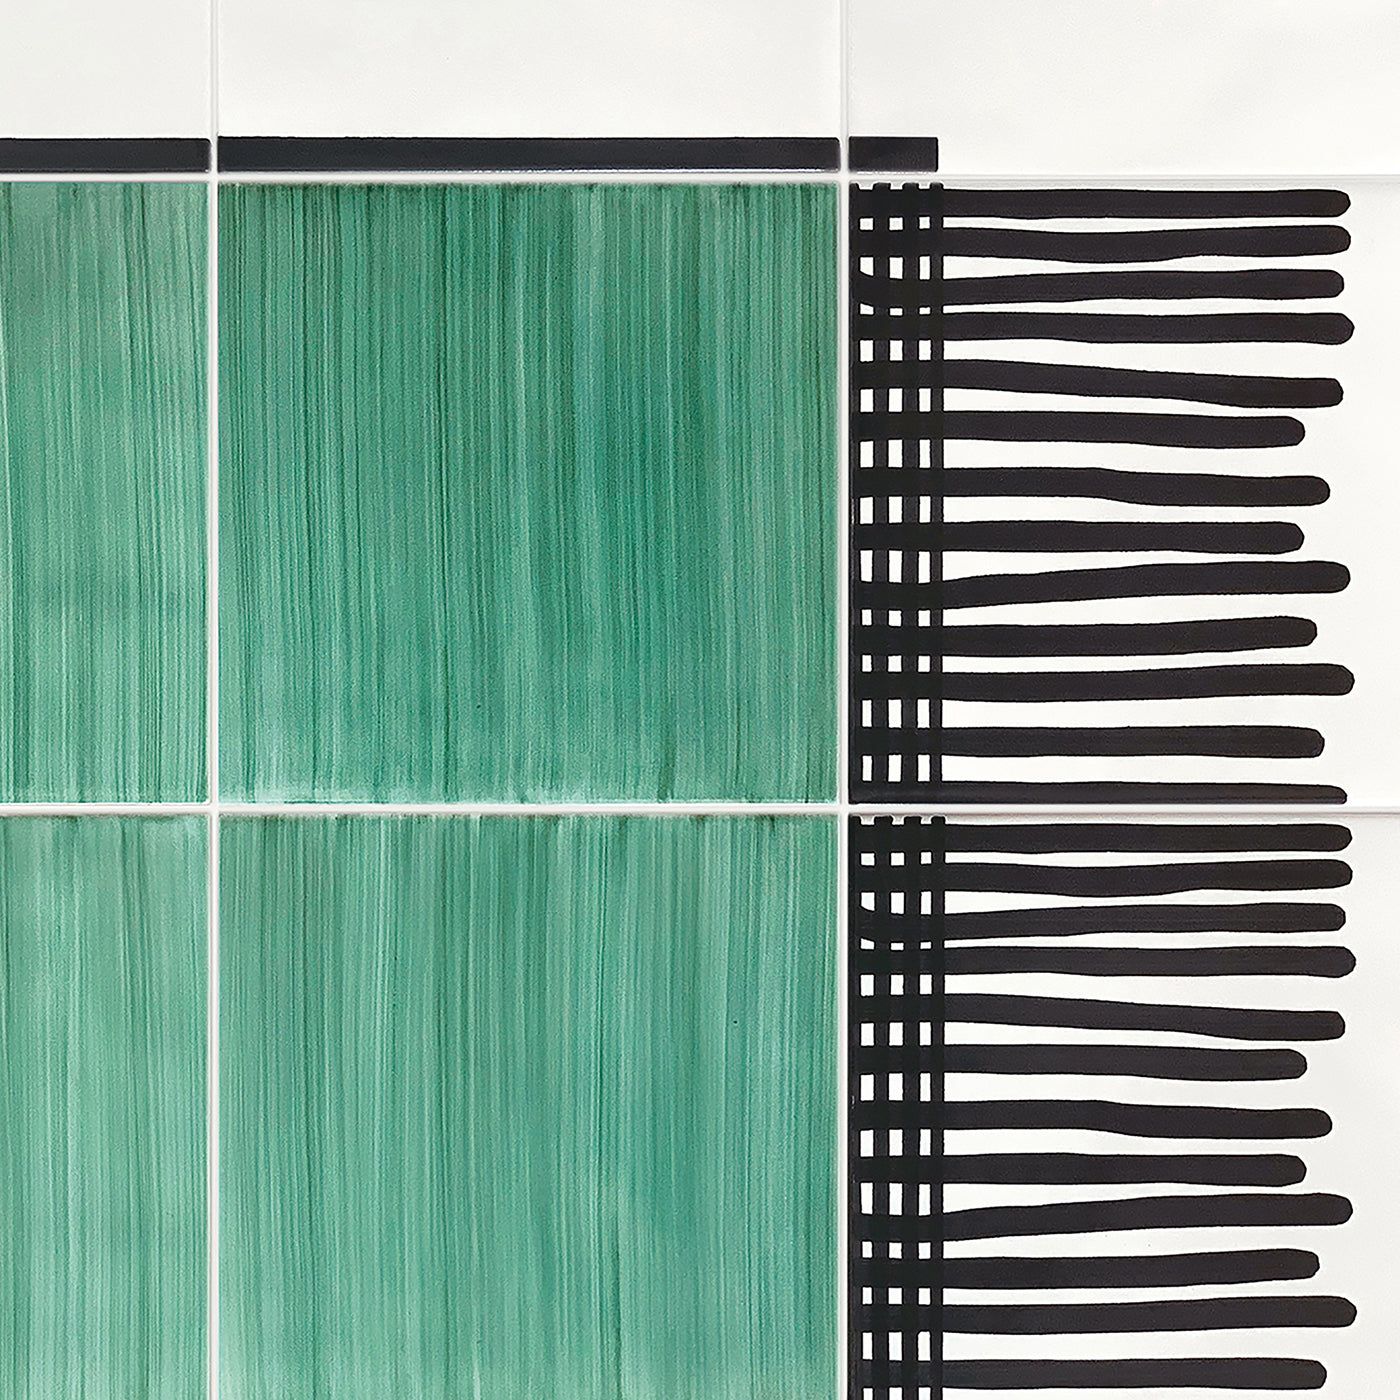 Carpet Green Ceramic Composition by Giuliano Andrea dell’Uva 200 x 100 - Alternative view 1